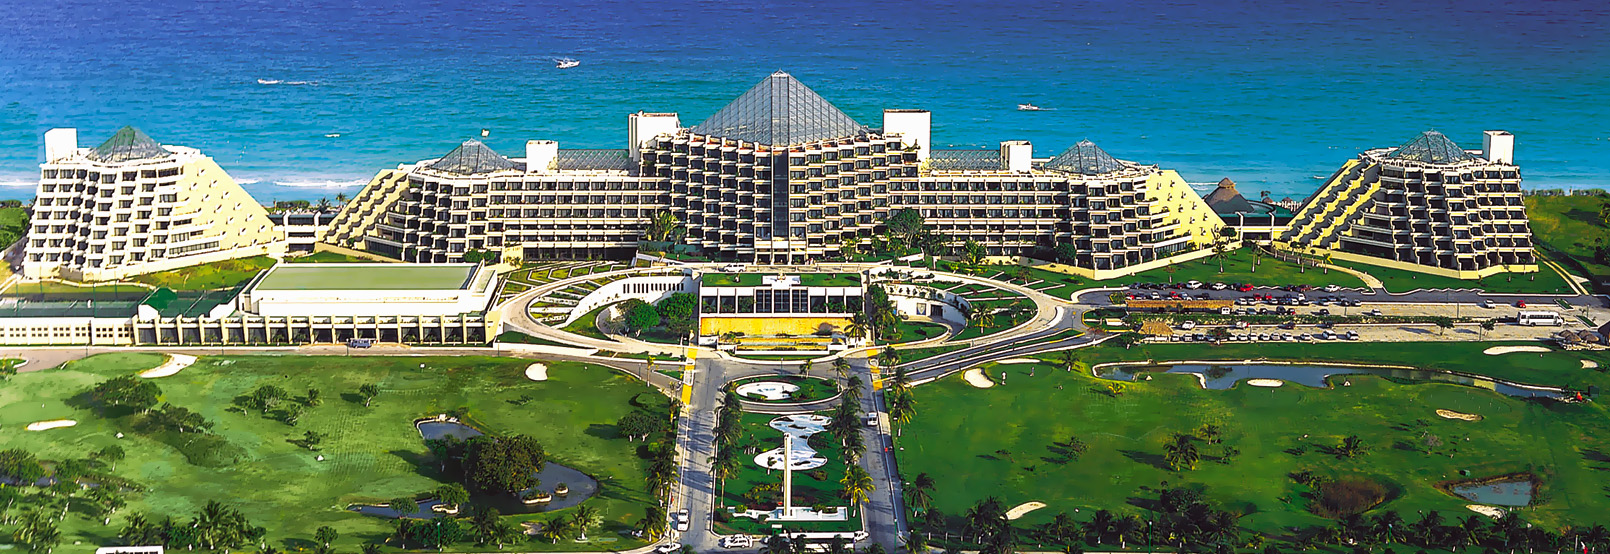 Paradisus Cancun Golf Club